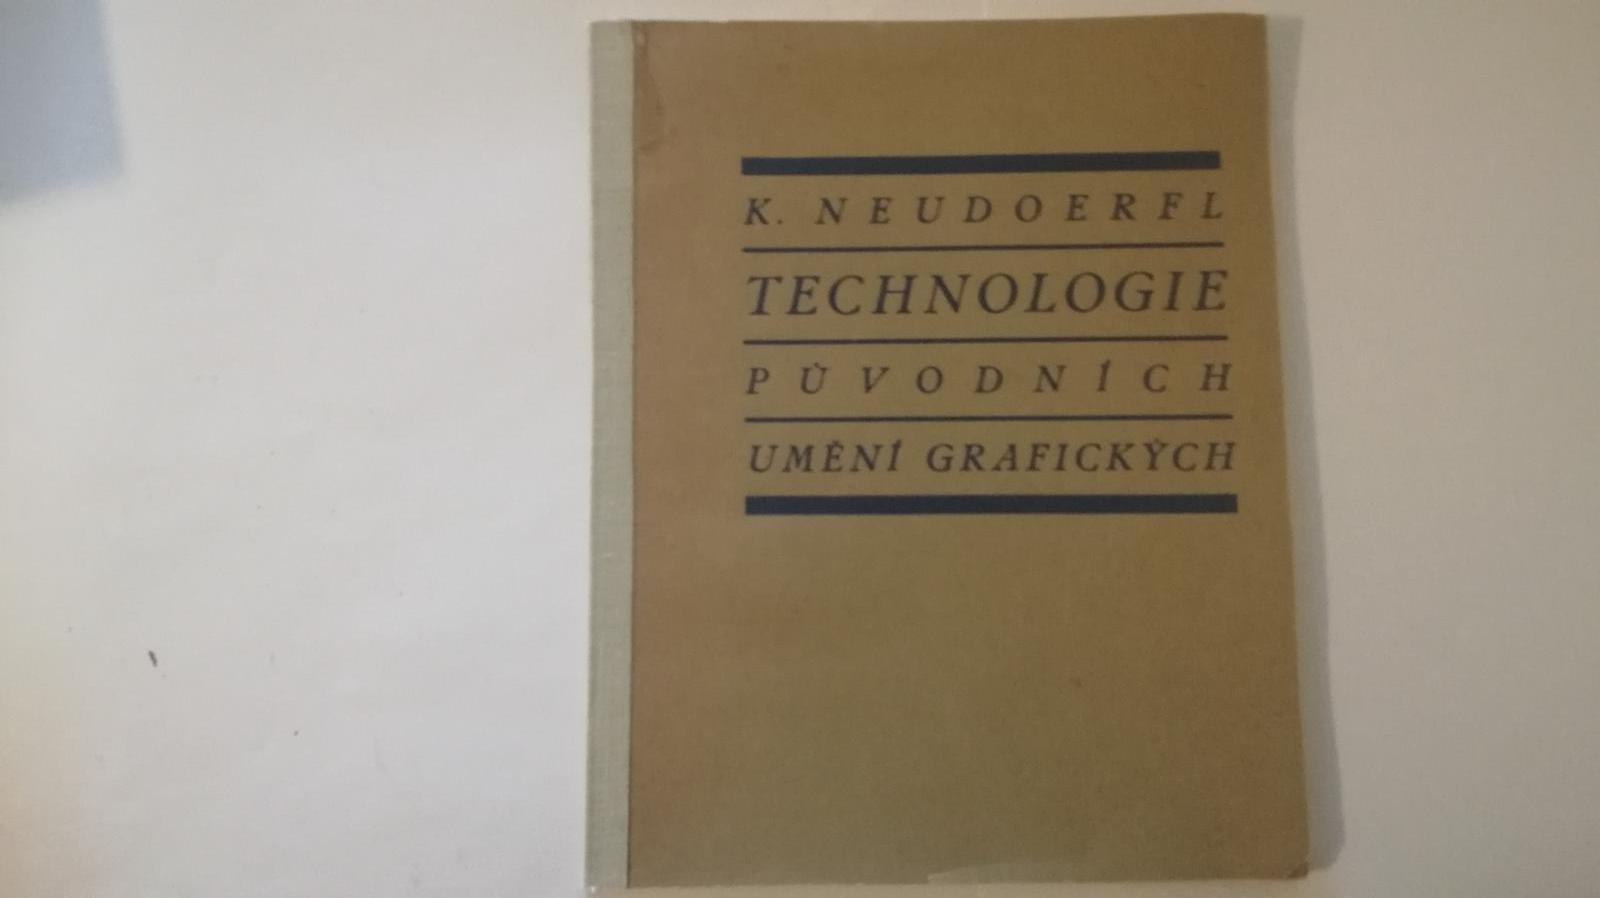 Technológia pôvodných umení grafických - K.Neudoerfl - Knihy